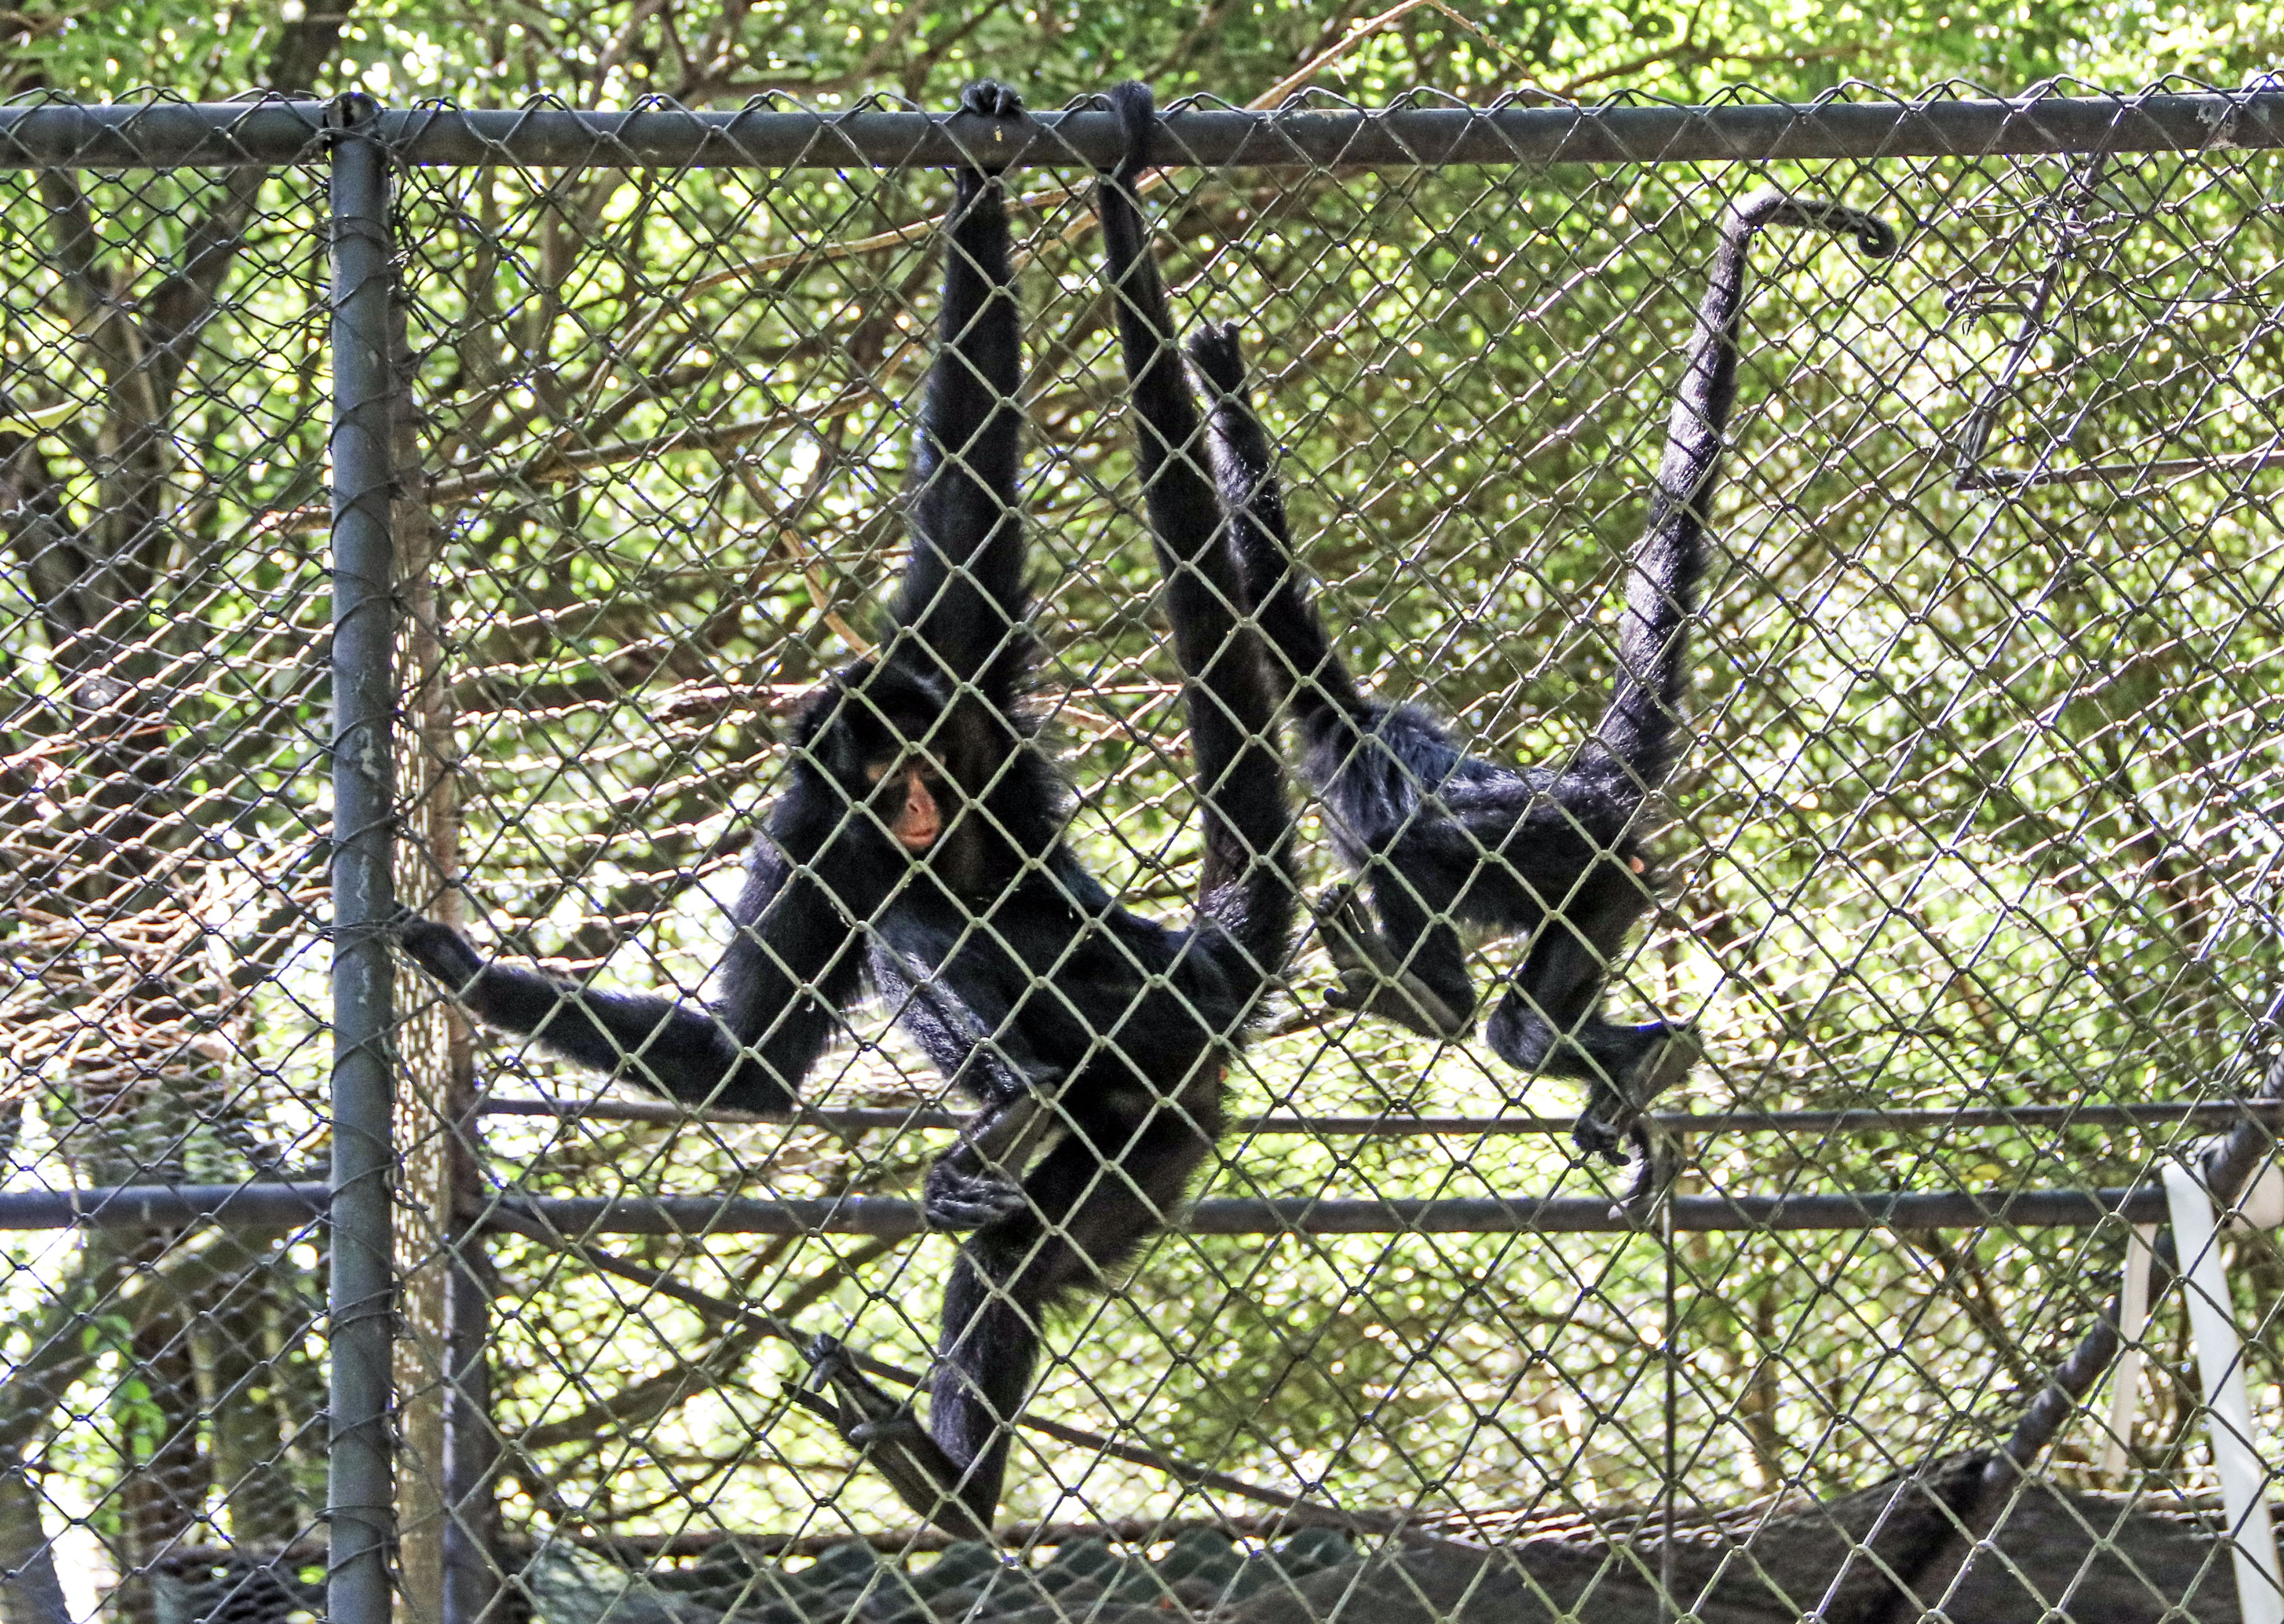 Macaco-aranha Cara Preta – Agência Municipal de Turismo, Eventos e